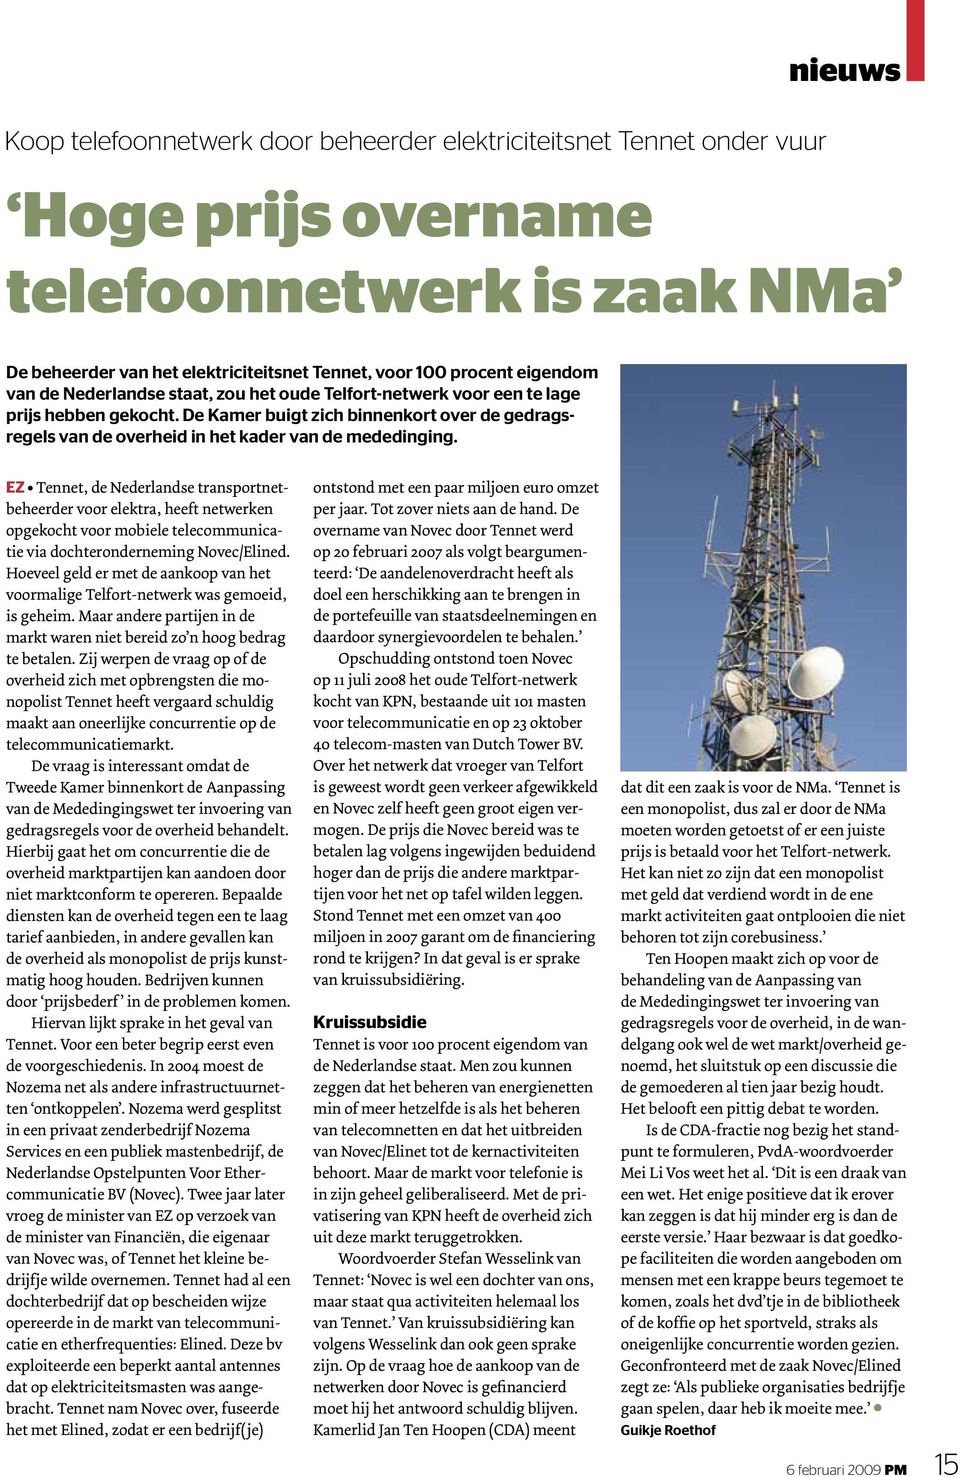 EZ Tennet, de Nederlandse transportnetbeheerder voor elektra, heeft netwerken opgekocht voor mobiele telecommunicatie via dochteronderneming Novec/Elined.